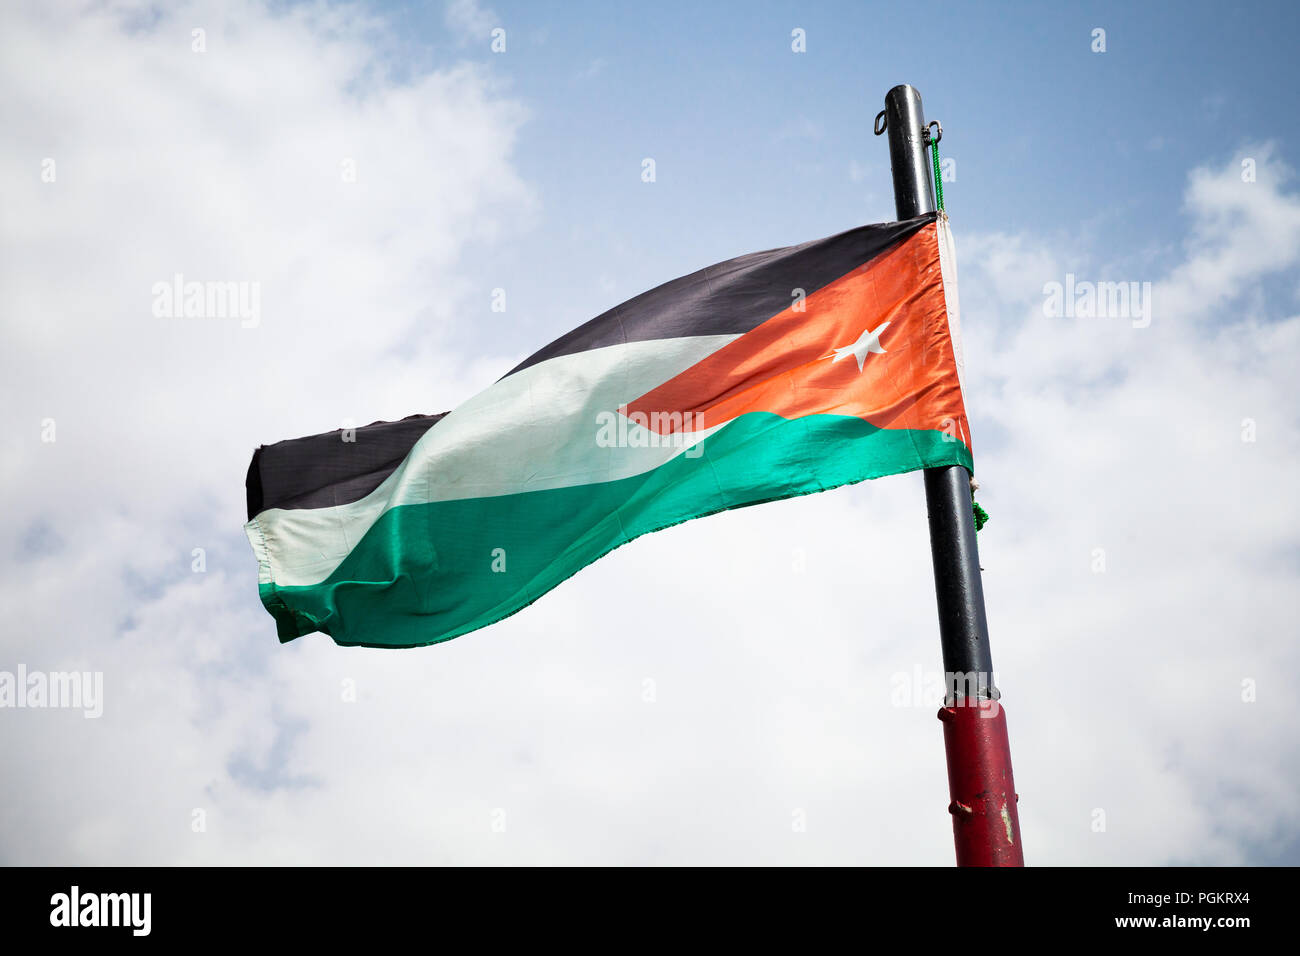 Brandissant le drapeau national de la Jordanie sur le vent sur ciel nuageux Banque D'Images